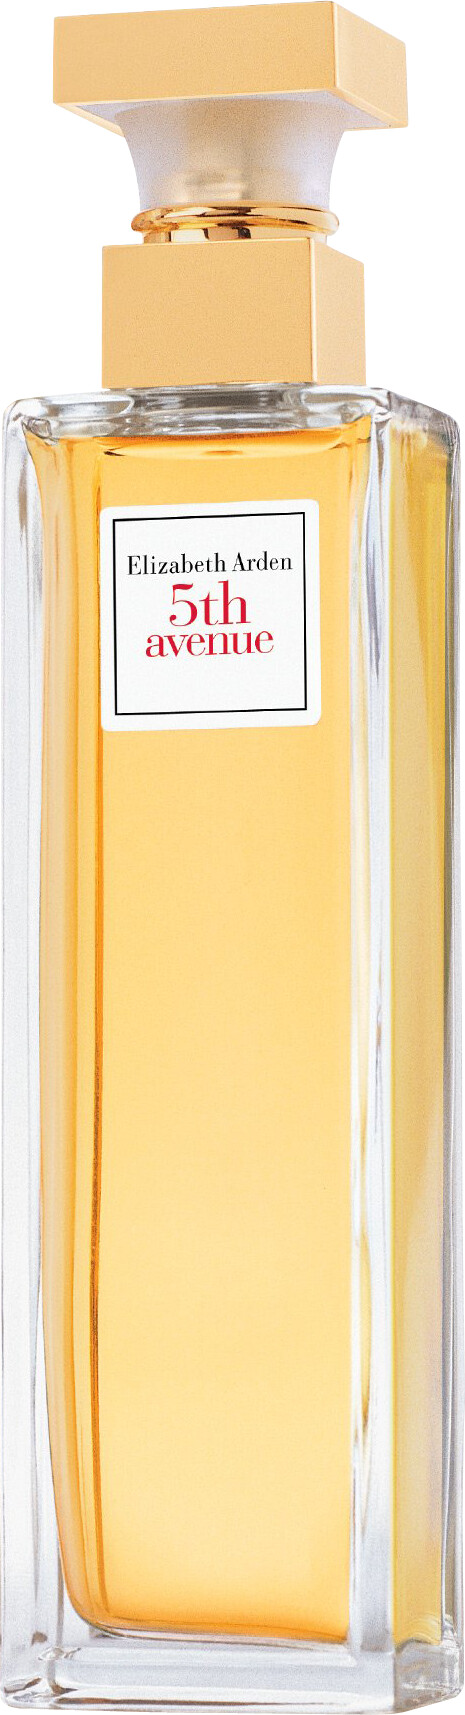 Elizabeth Arden 5th Avenue Eau de Parfum Spray 30ml